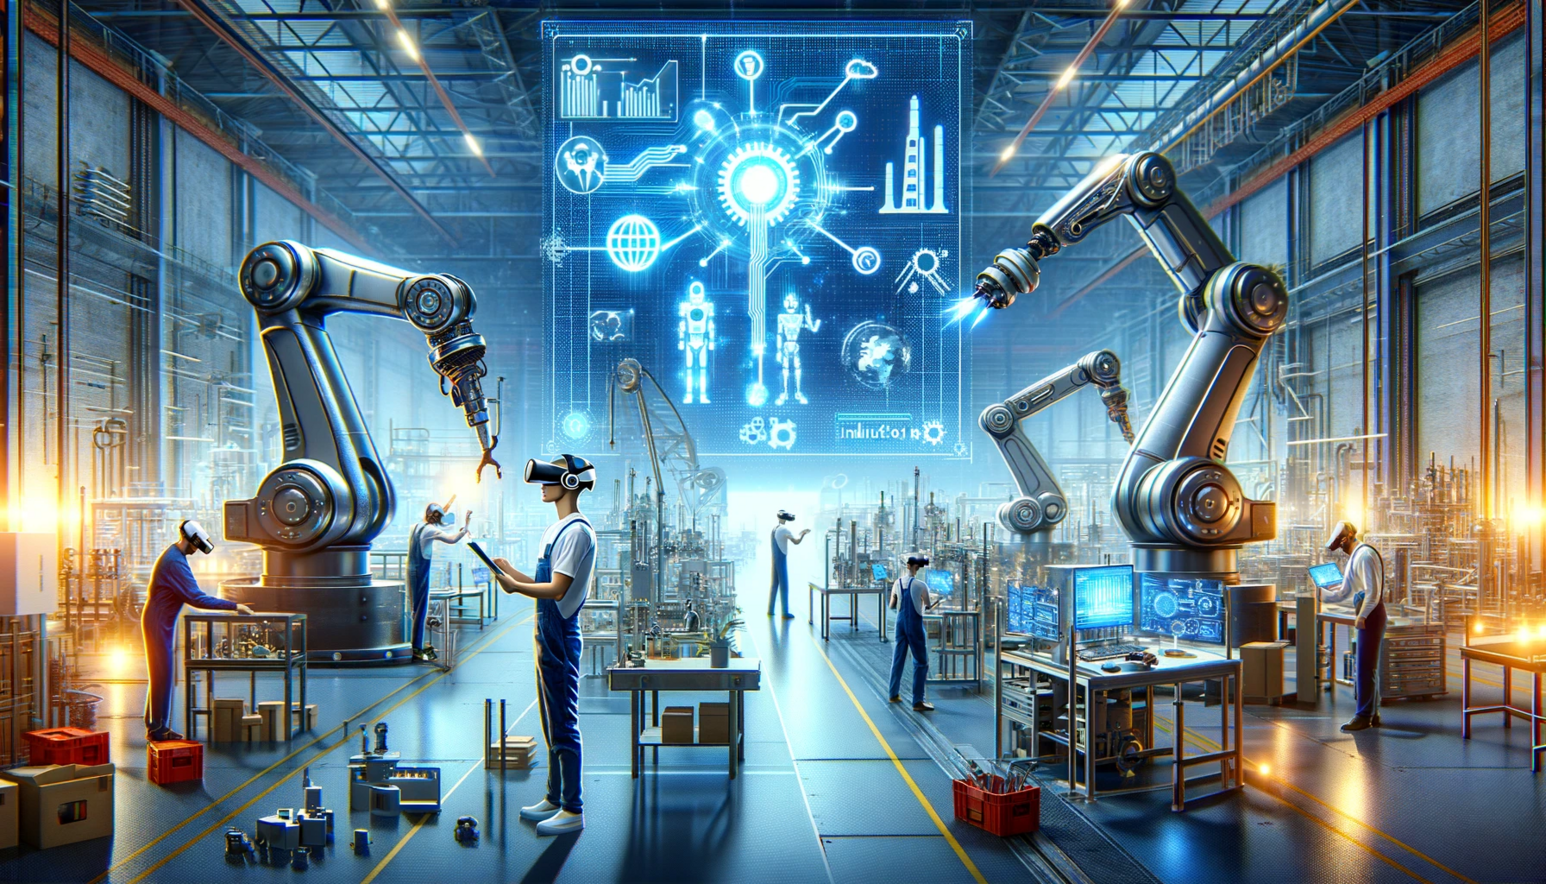 Welche Technologietrends treiben das Industrie Metaverse voran? Ein Überblick über KI, AR/VR und IoT.